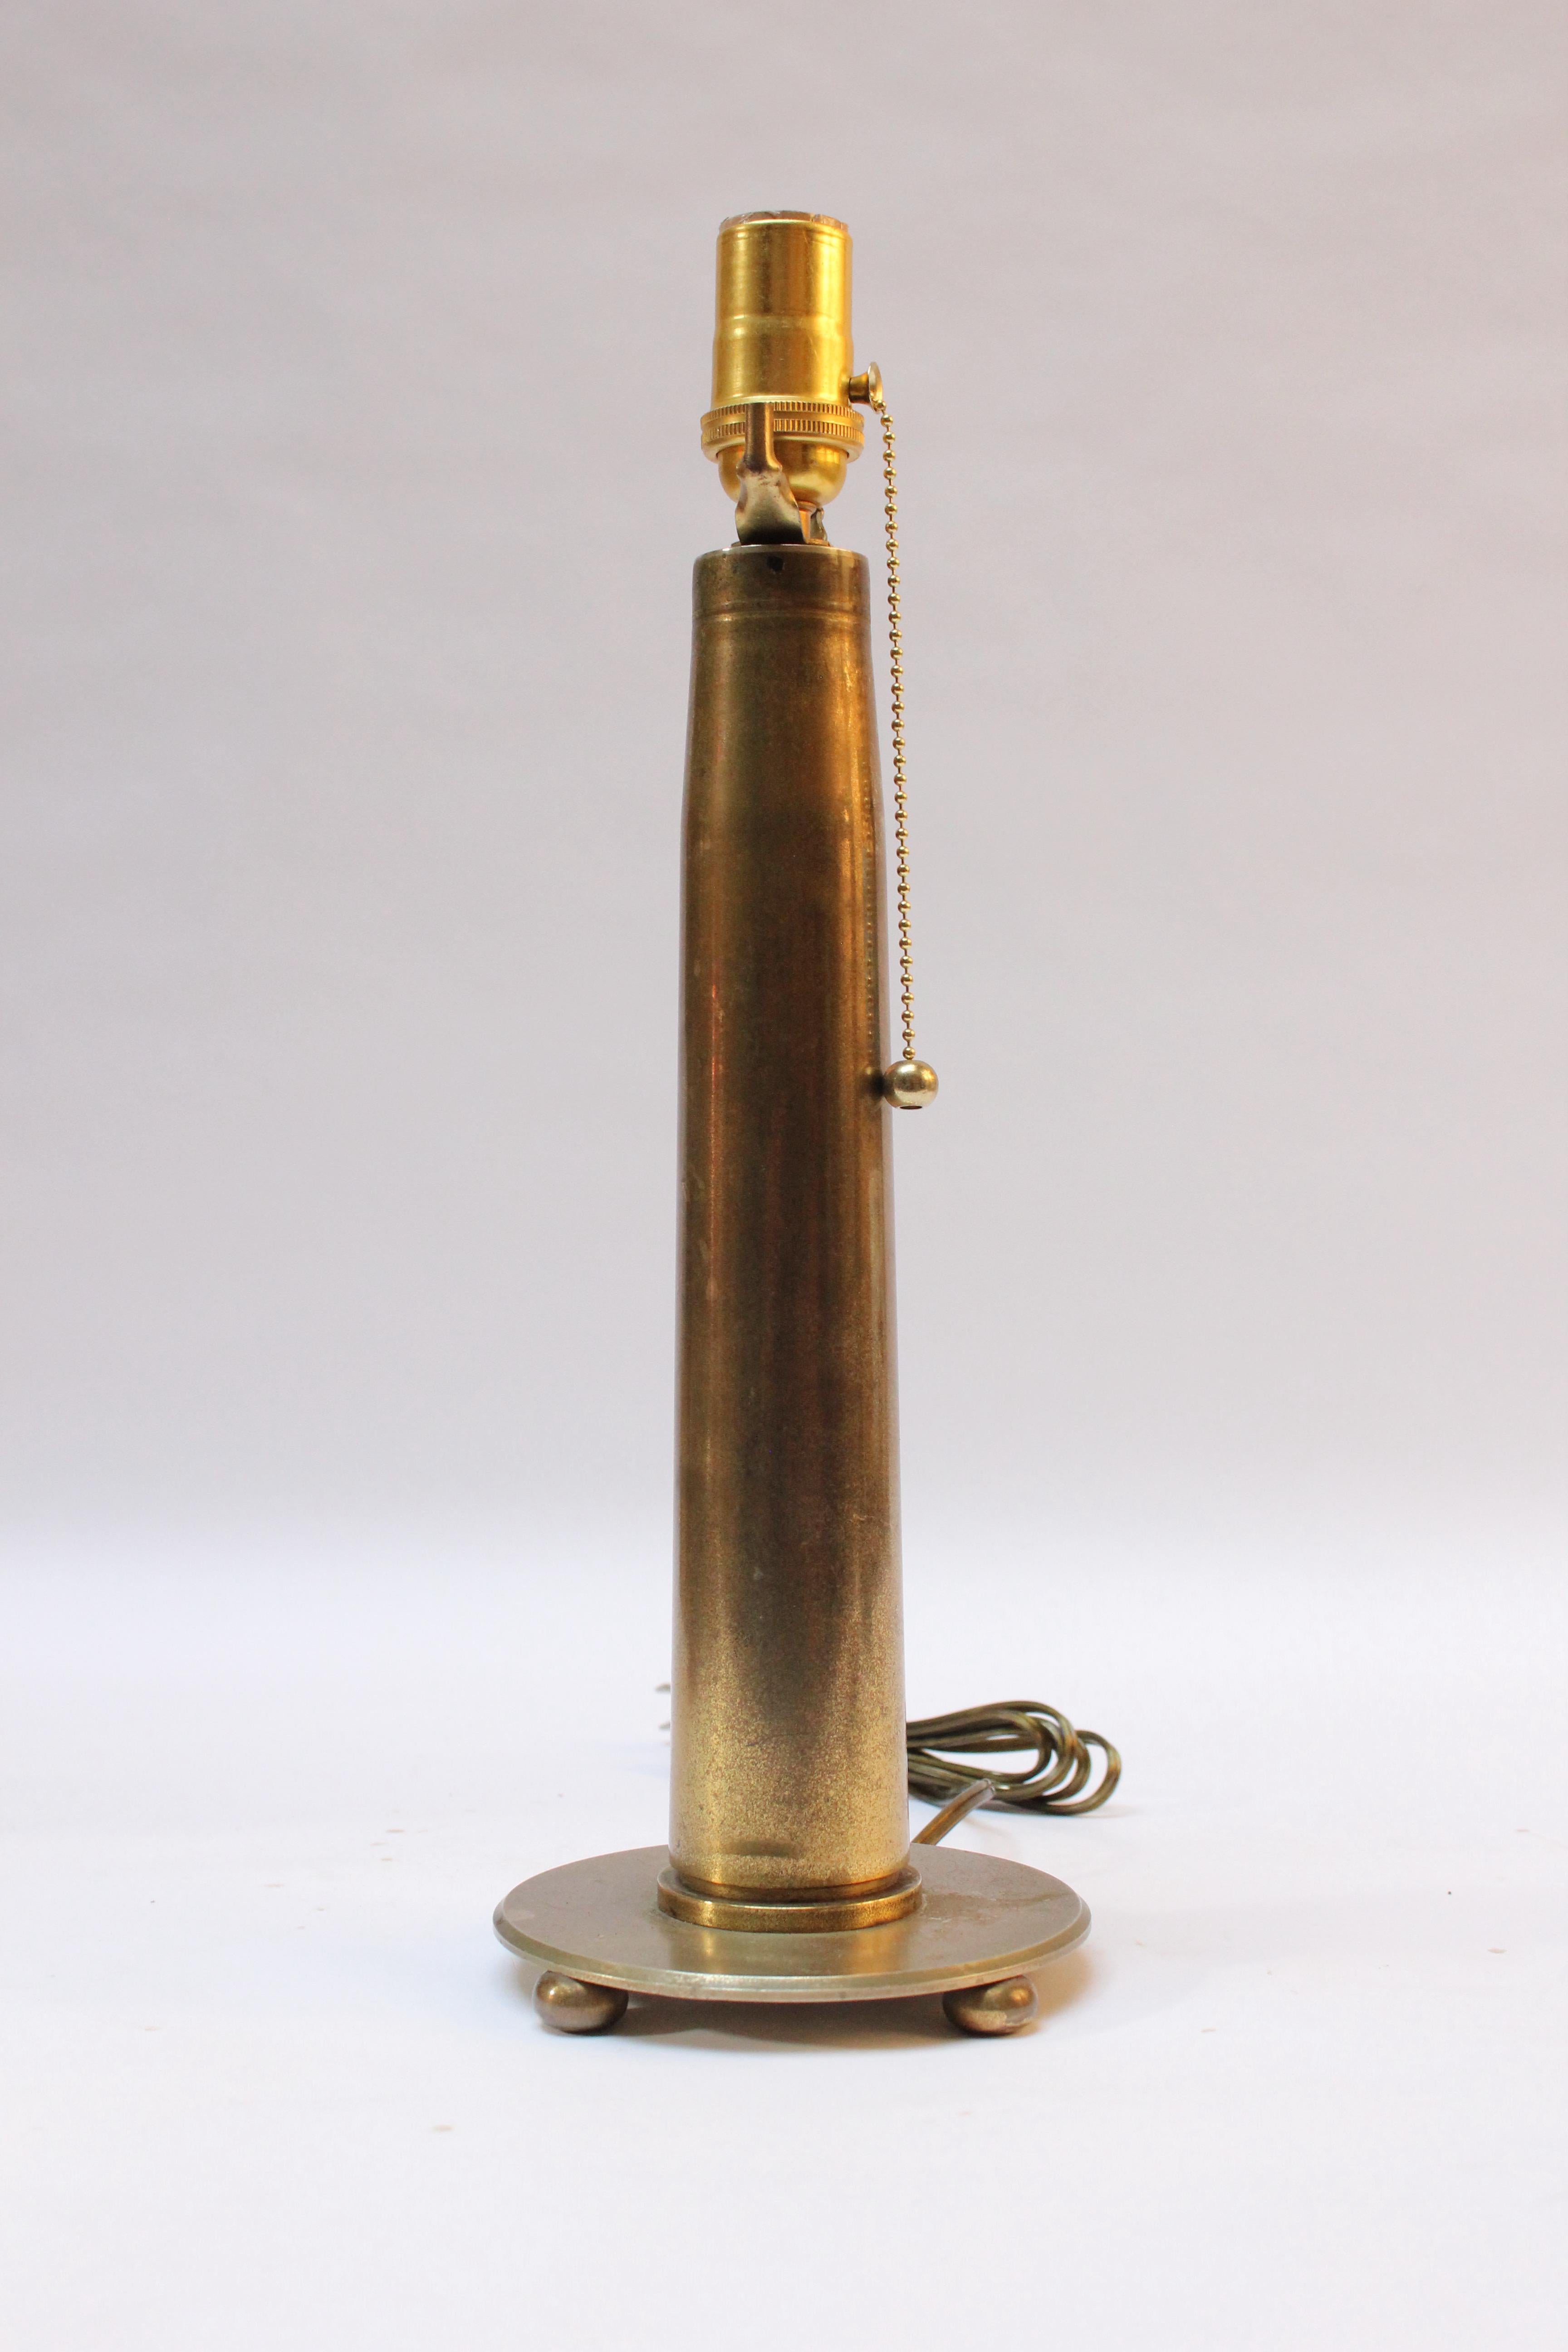 CIRCA 1930er Jahre Trench Art Lampe aus Messing Artillerie Shell auf einem Messing-Sockel durch drei Kugelfüße unterstützt montiert. 
Reiche Patina vorhanden, wie gezeigt.
Maße: Höhe der Schale mit Abzug des Sockels: 13.25